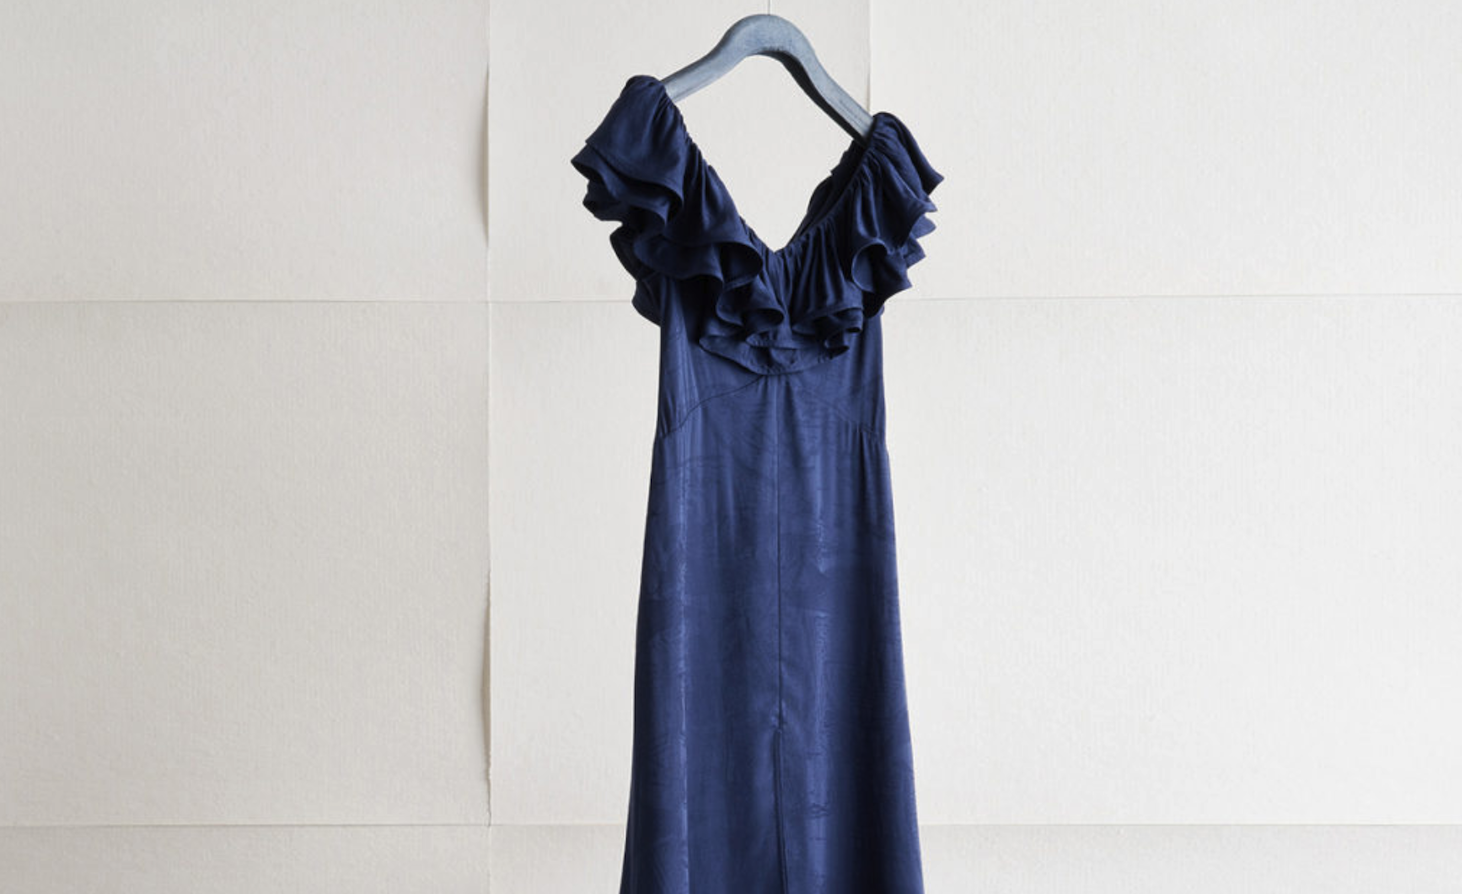 H&M Conscious Koleksiyonunda Renewcell Circulose'un kullanıldığı bir elbise.